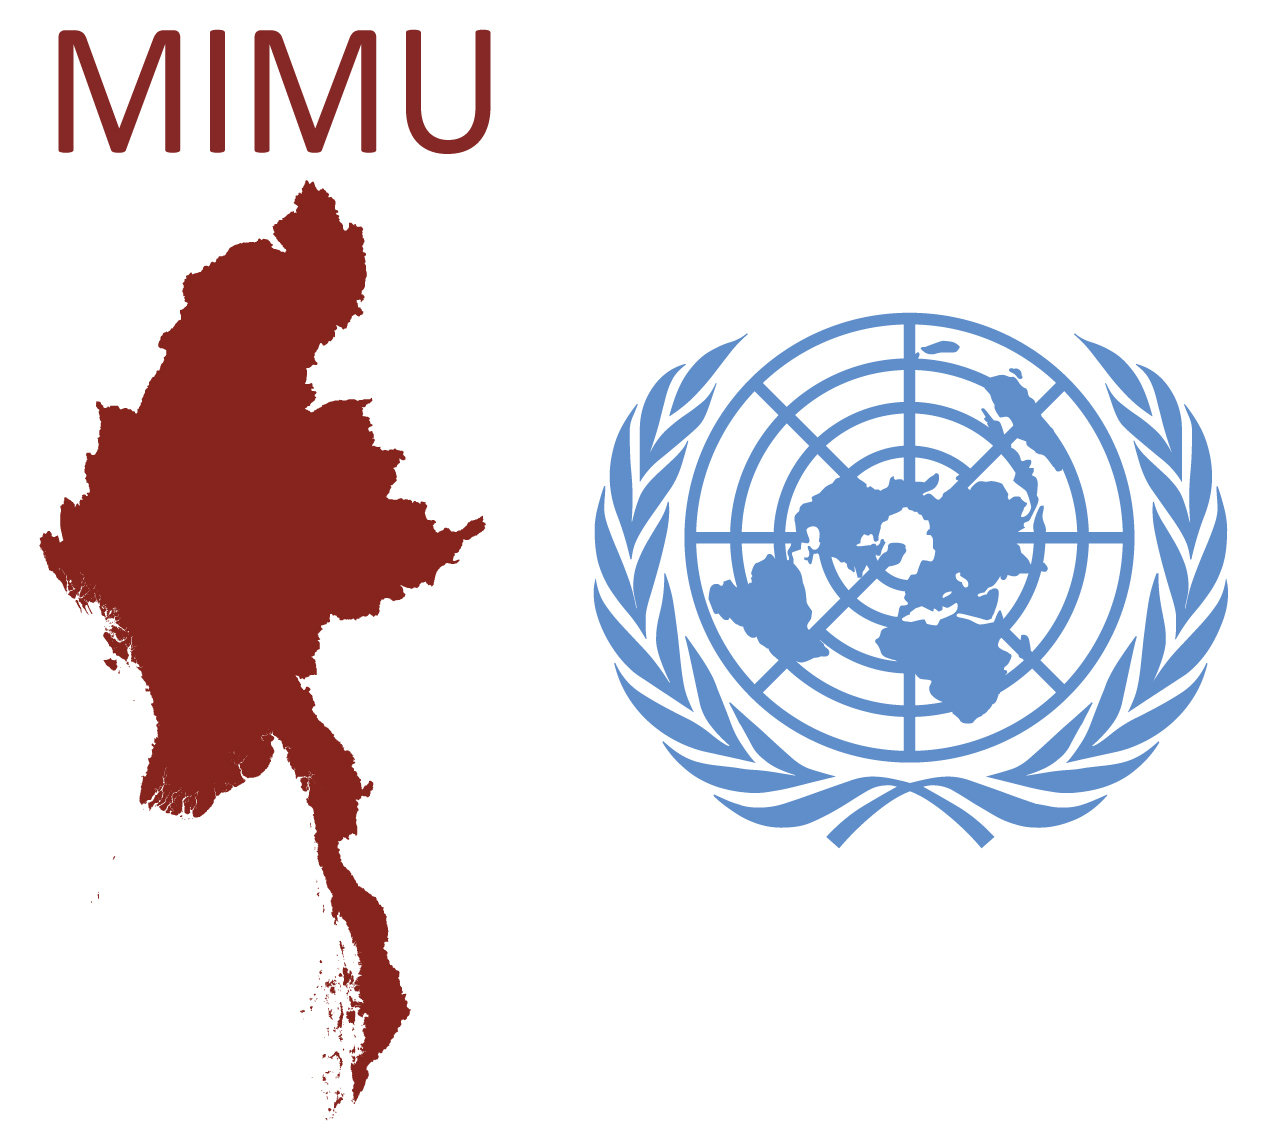 myanmar-information-management-unit-mimu